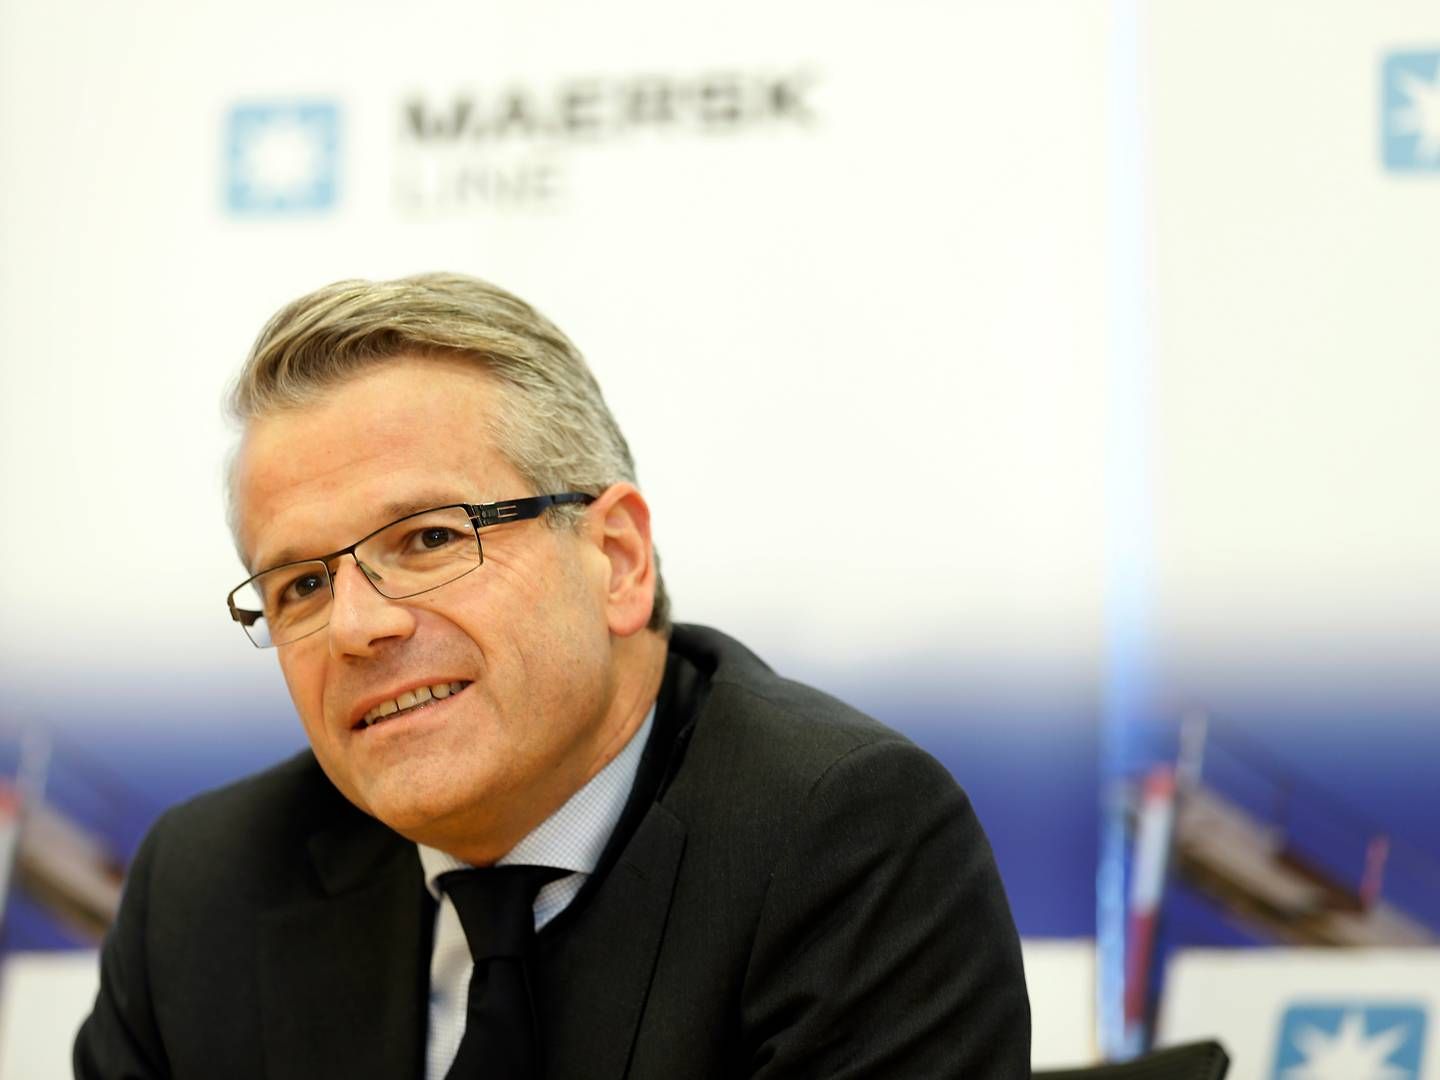 Vincent Clerc tog over som topchef i Maersk ved årsskiftet, hvor Søren Skou takkede efter lidt mere end seks år på posten. | Foto: Yen Meng Jiin/AP/Ritzau Scanpix